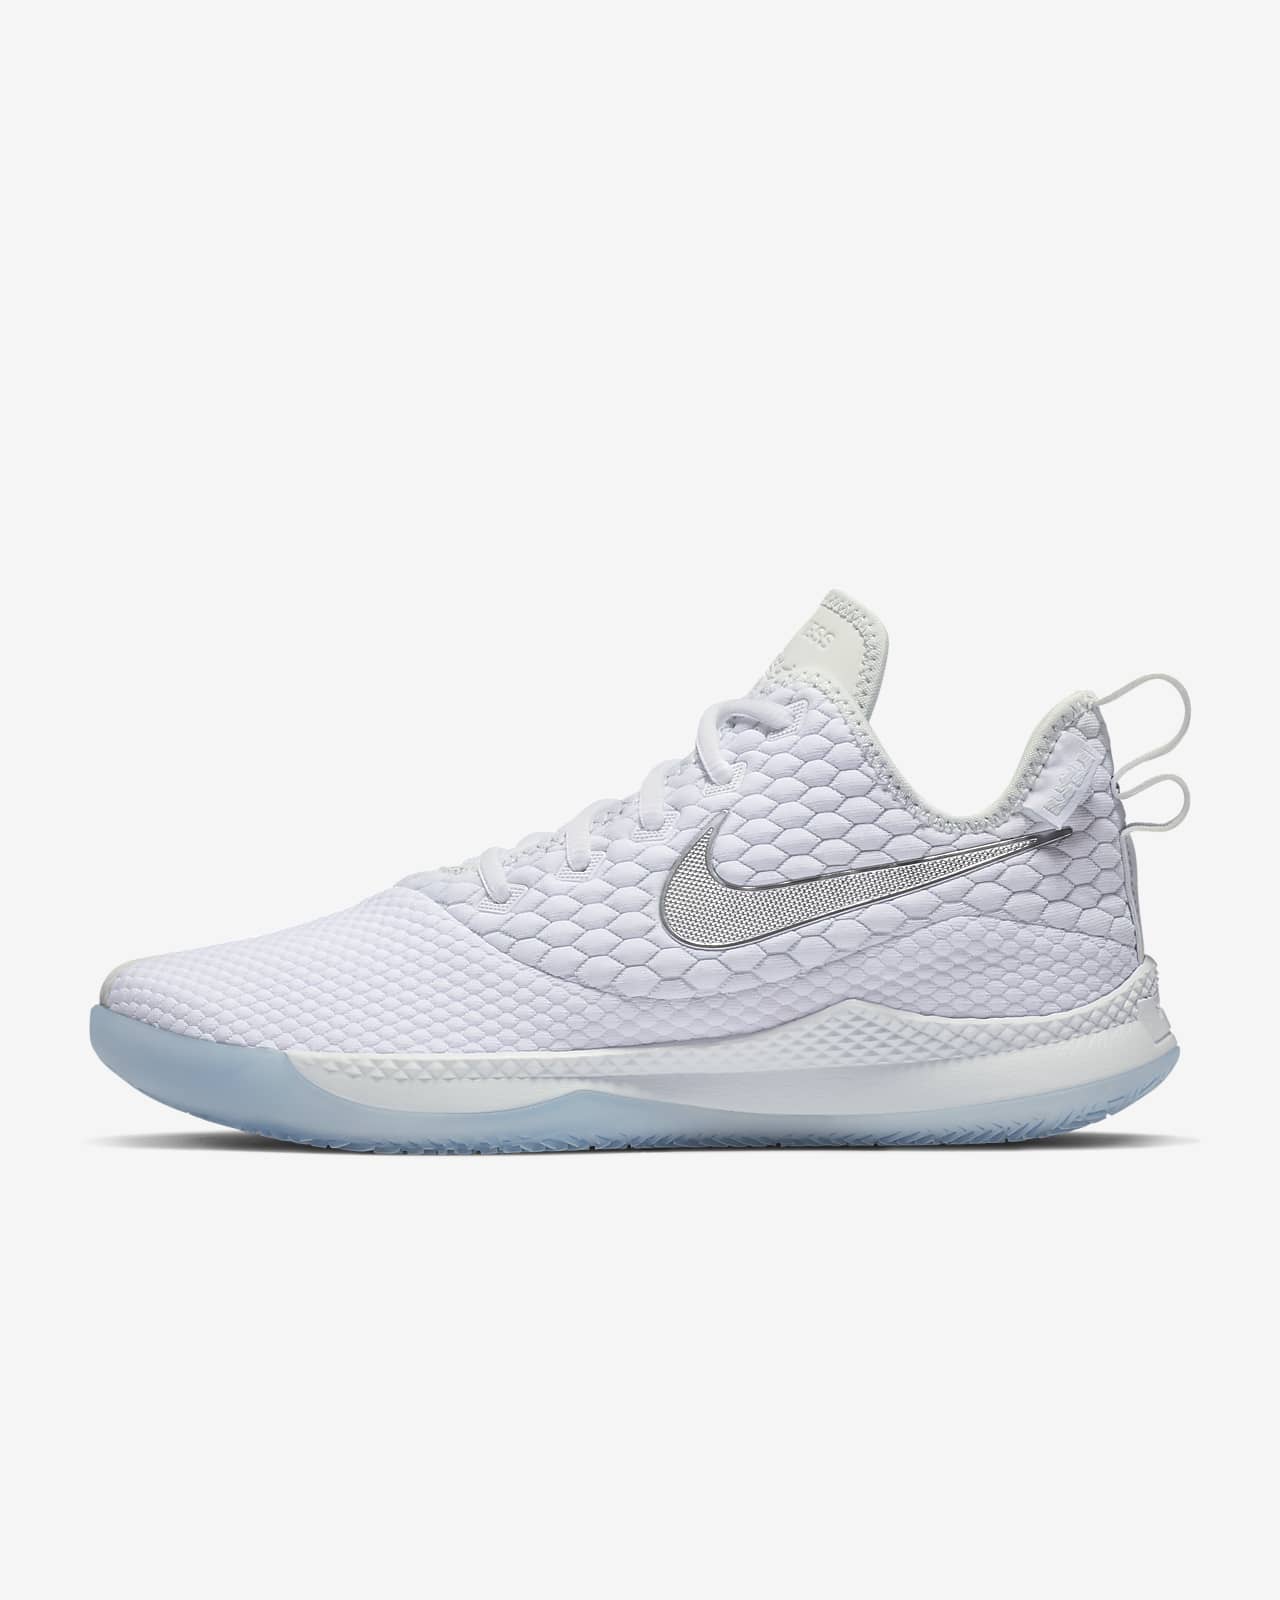 LeBron Witness III Men's Shoe. Nike.com